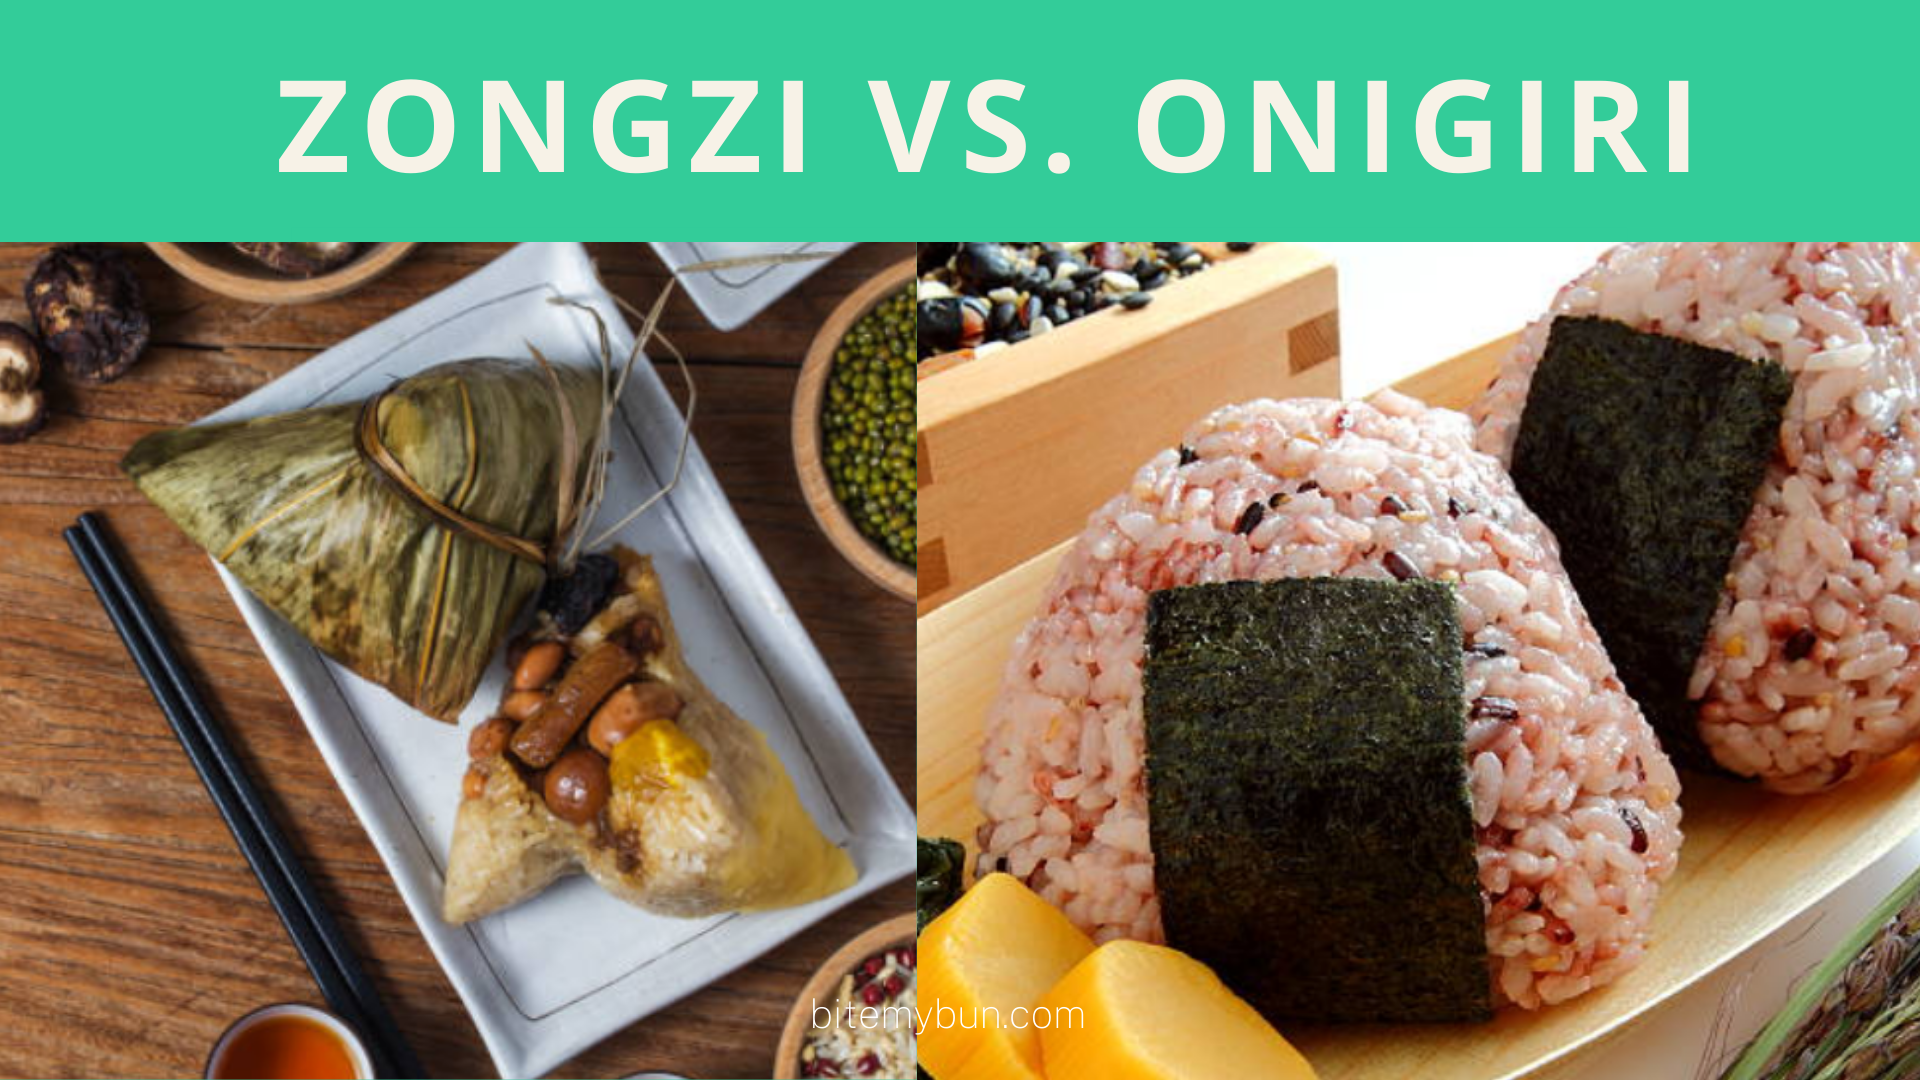 Zongzi vs. onigiri | Så här skiljer du dem åt